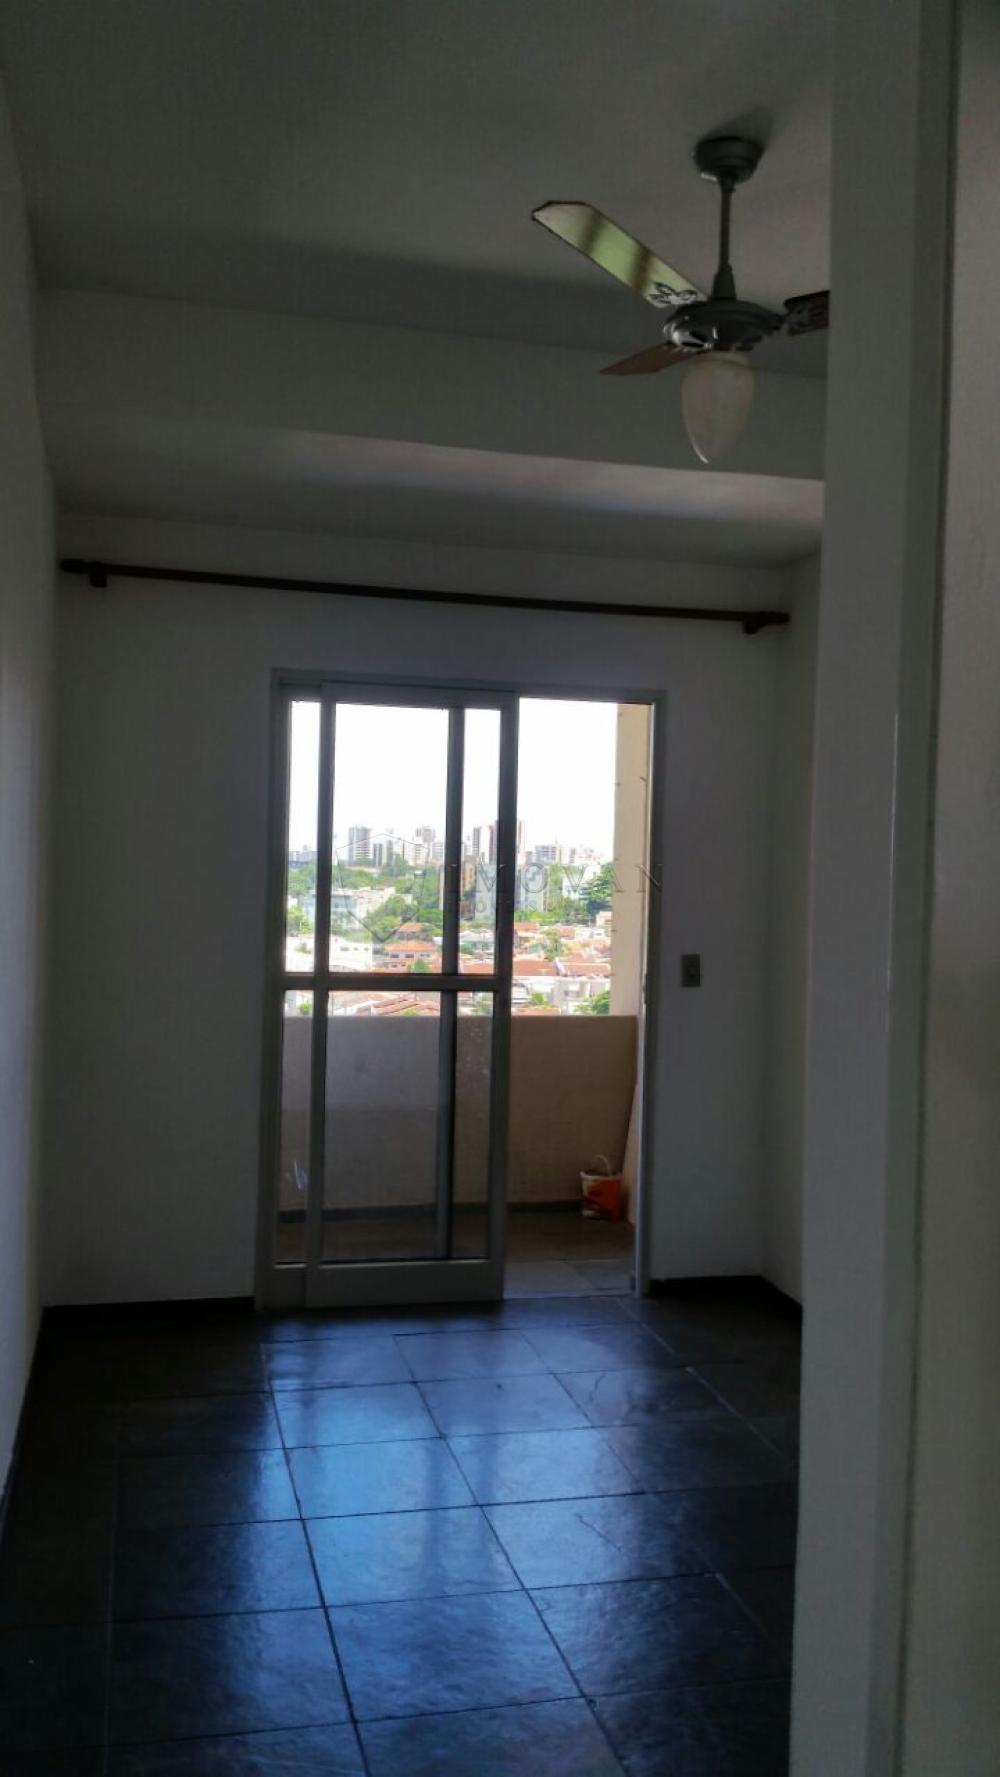 Comprar Apartamento / Padrão em Ribeirão Preto R$ 285.000,00 - Foto 7